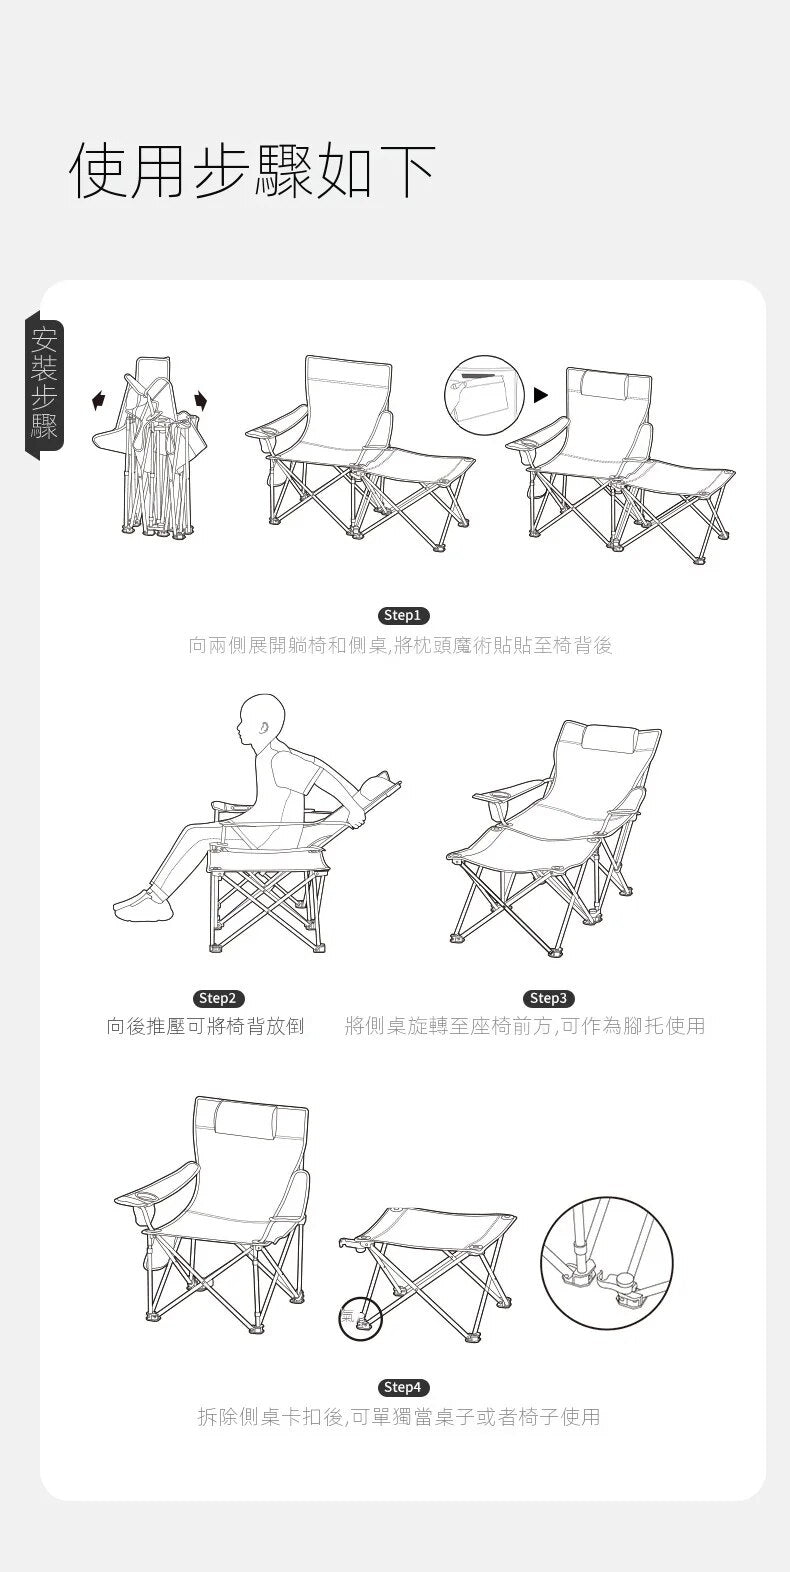 【Featured】組合式桌椅兩用摺疊長椅 - 黑色/米色